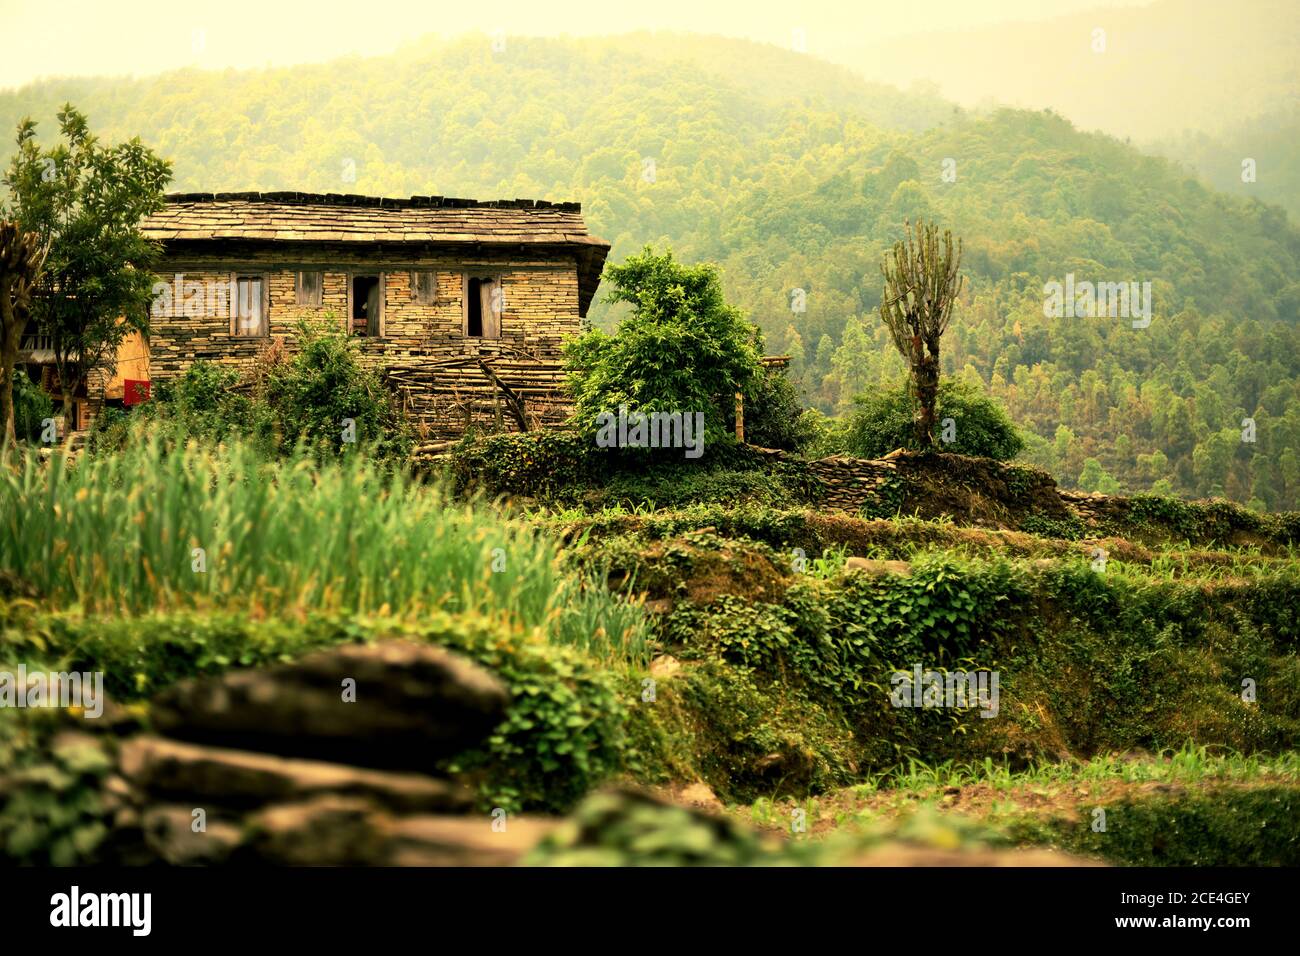 Ein Bauernhaus im landwirtschaftlichen Dorf Sidhane in der Panchase Bergregion, Nepal, wo die Einheimischen auch auf Ökotourismus angewiesen sind. Stockfoto